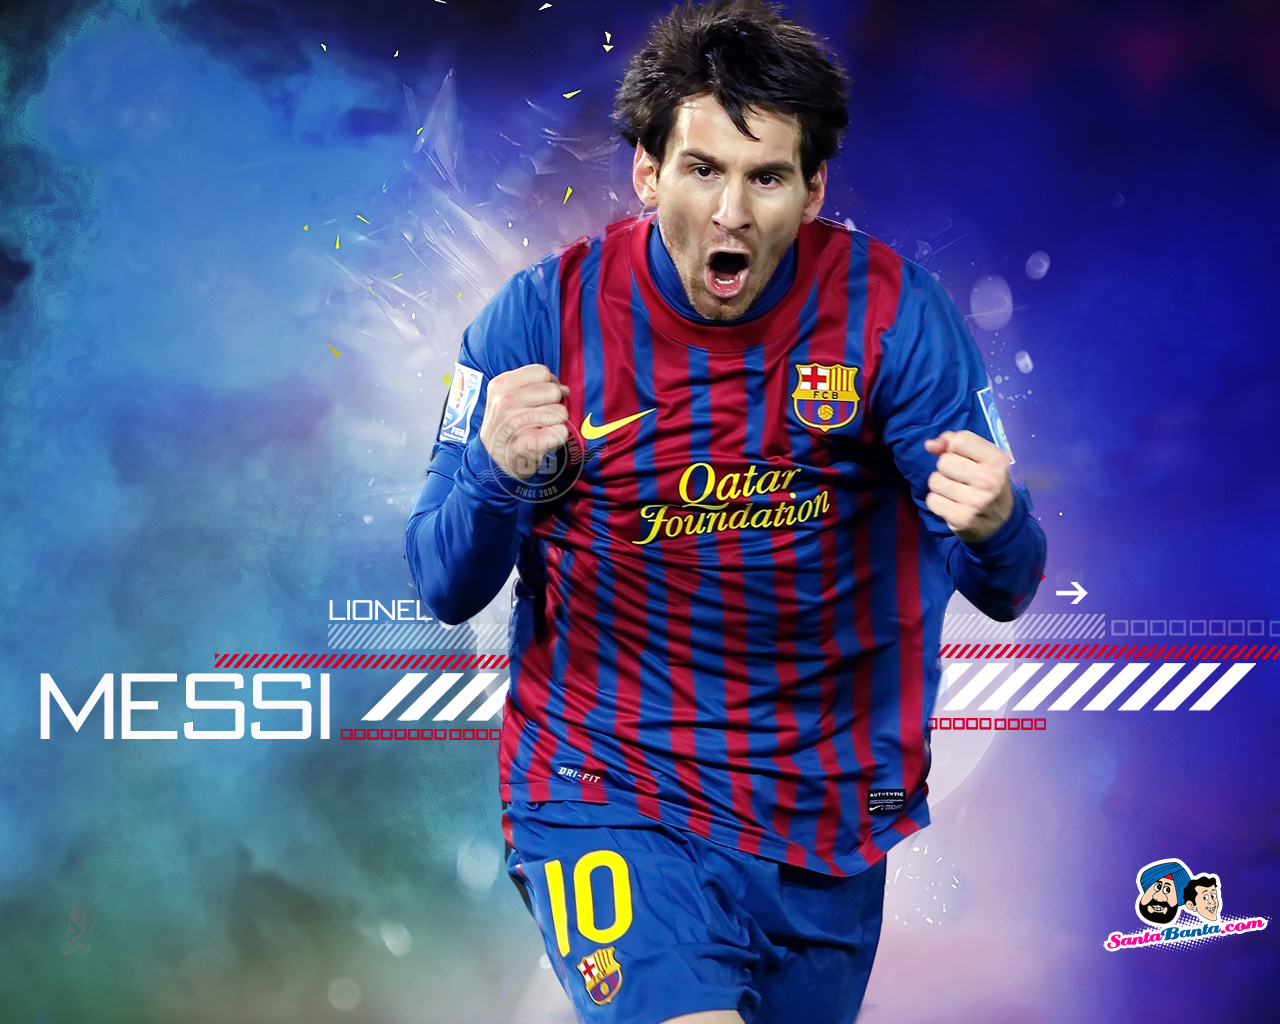 Description Lionel Messi Barcelona Wallpaper is a hi res Wallpaper